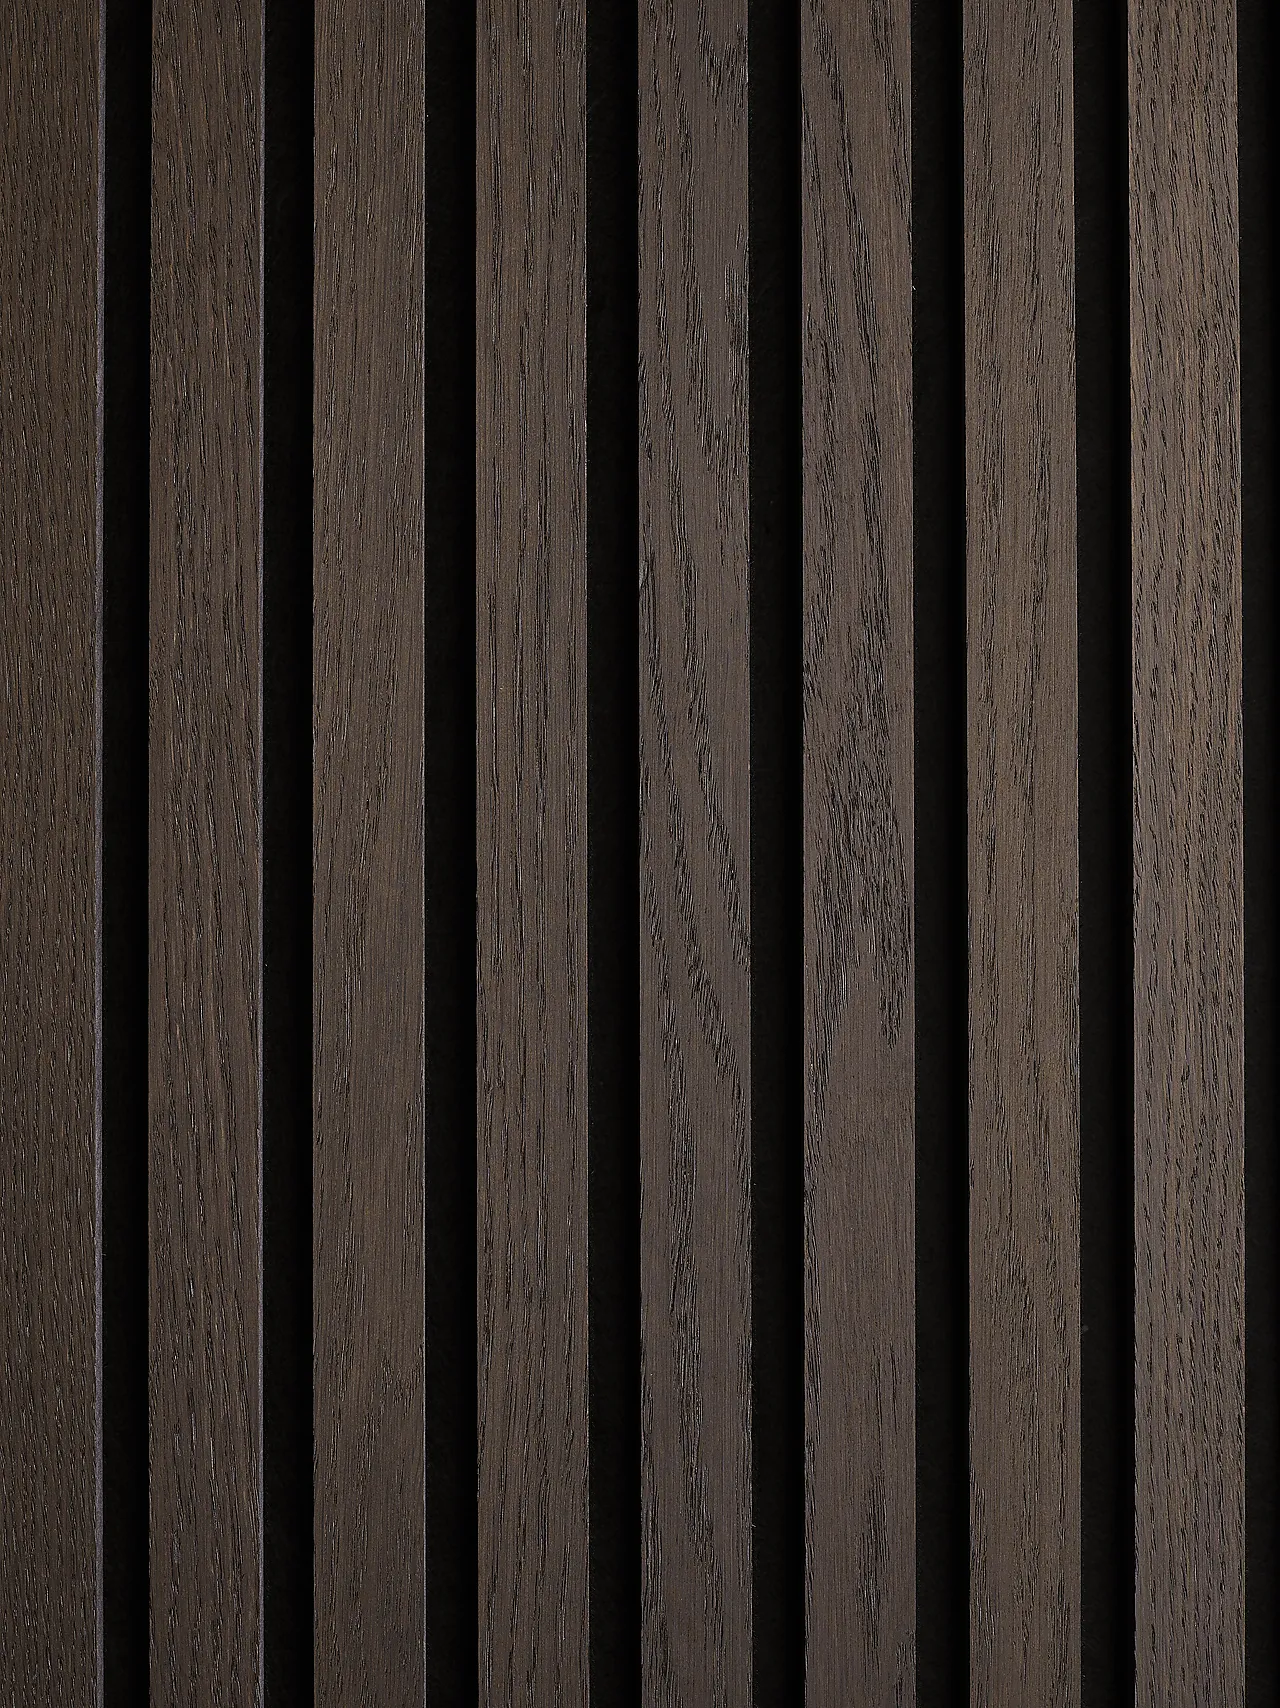 Panel røykt eik ubeh (fsc)-2400 svart kjerne, svart filt, 2400x600 null - null - 2 - Miniatyr